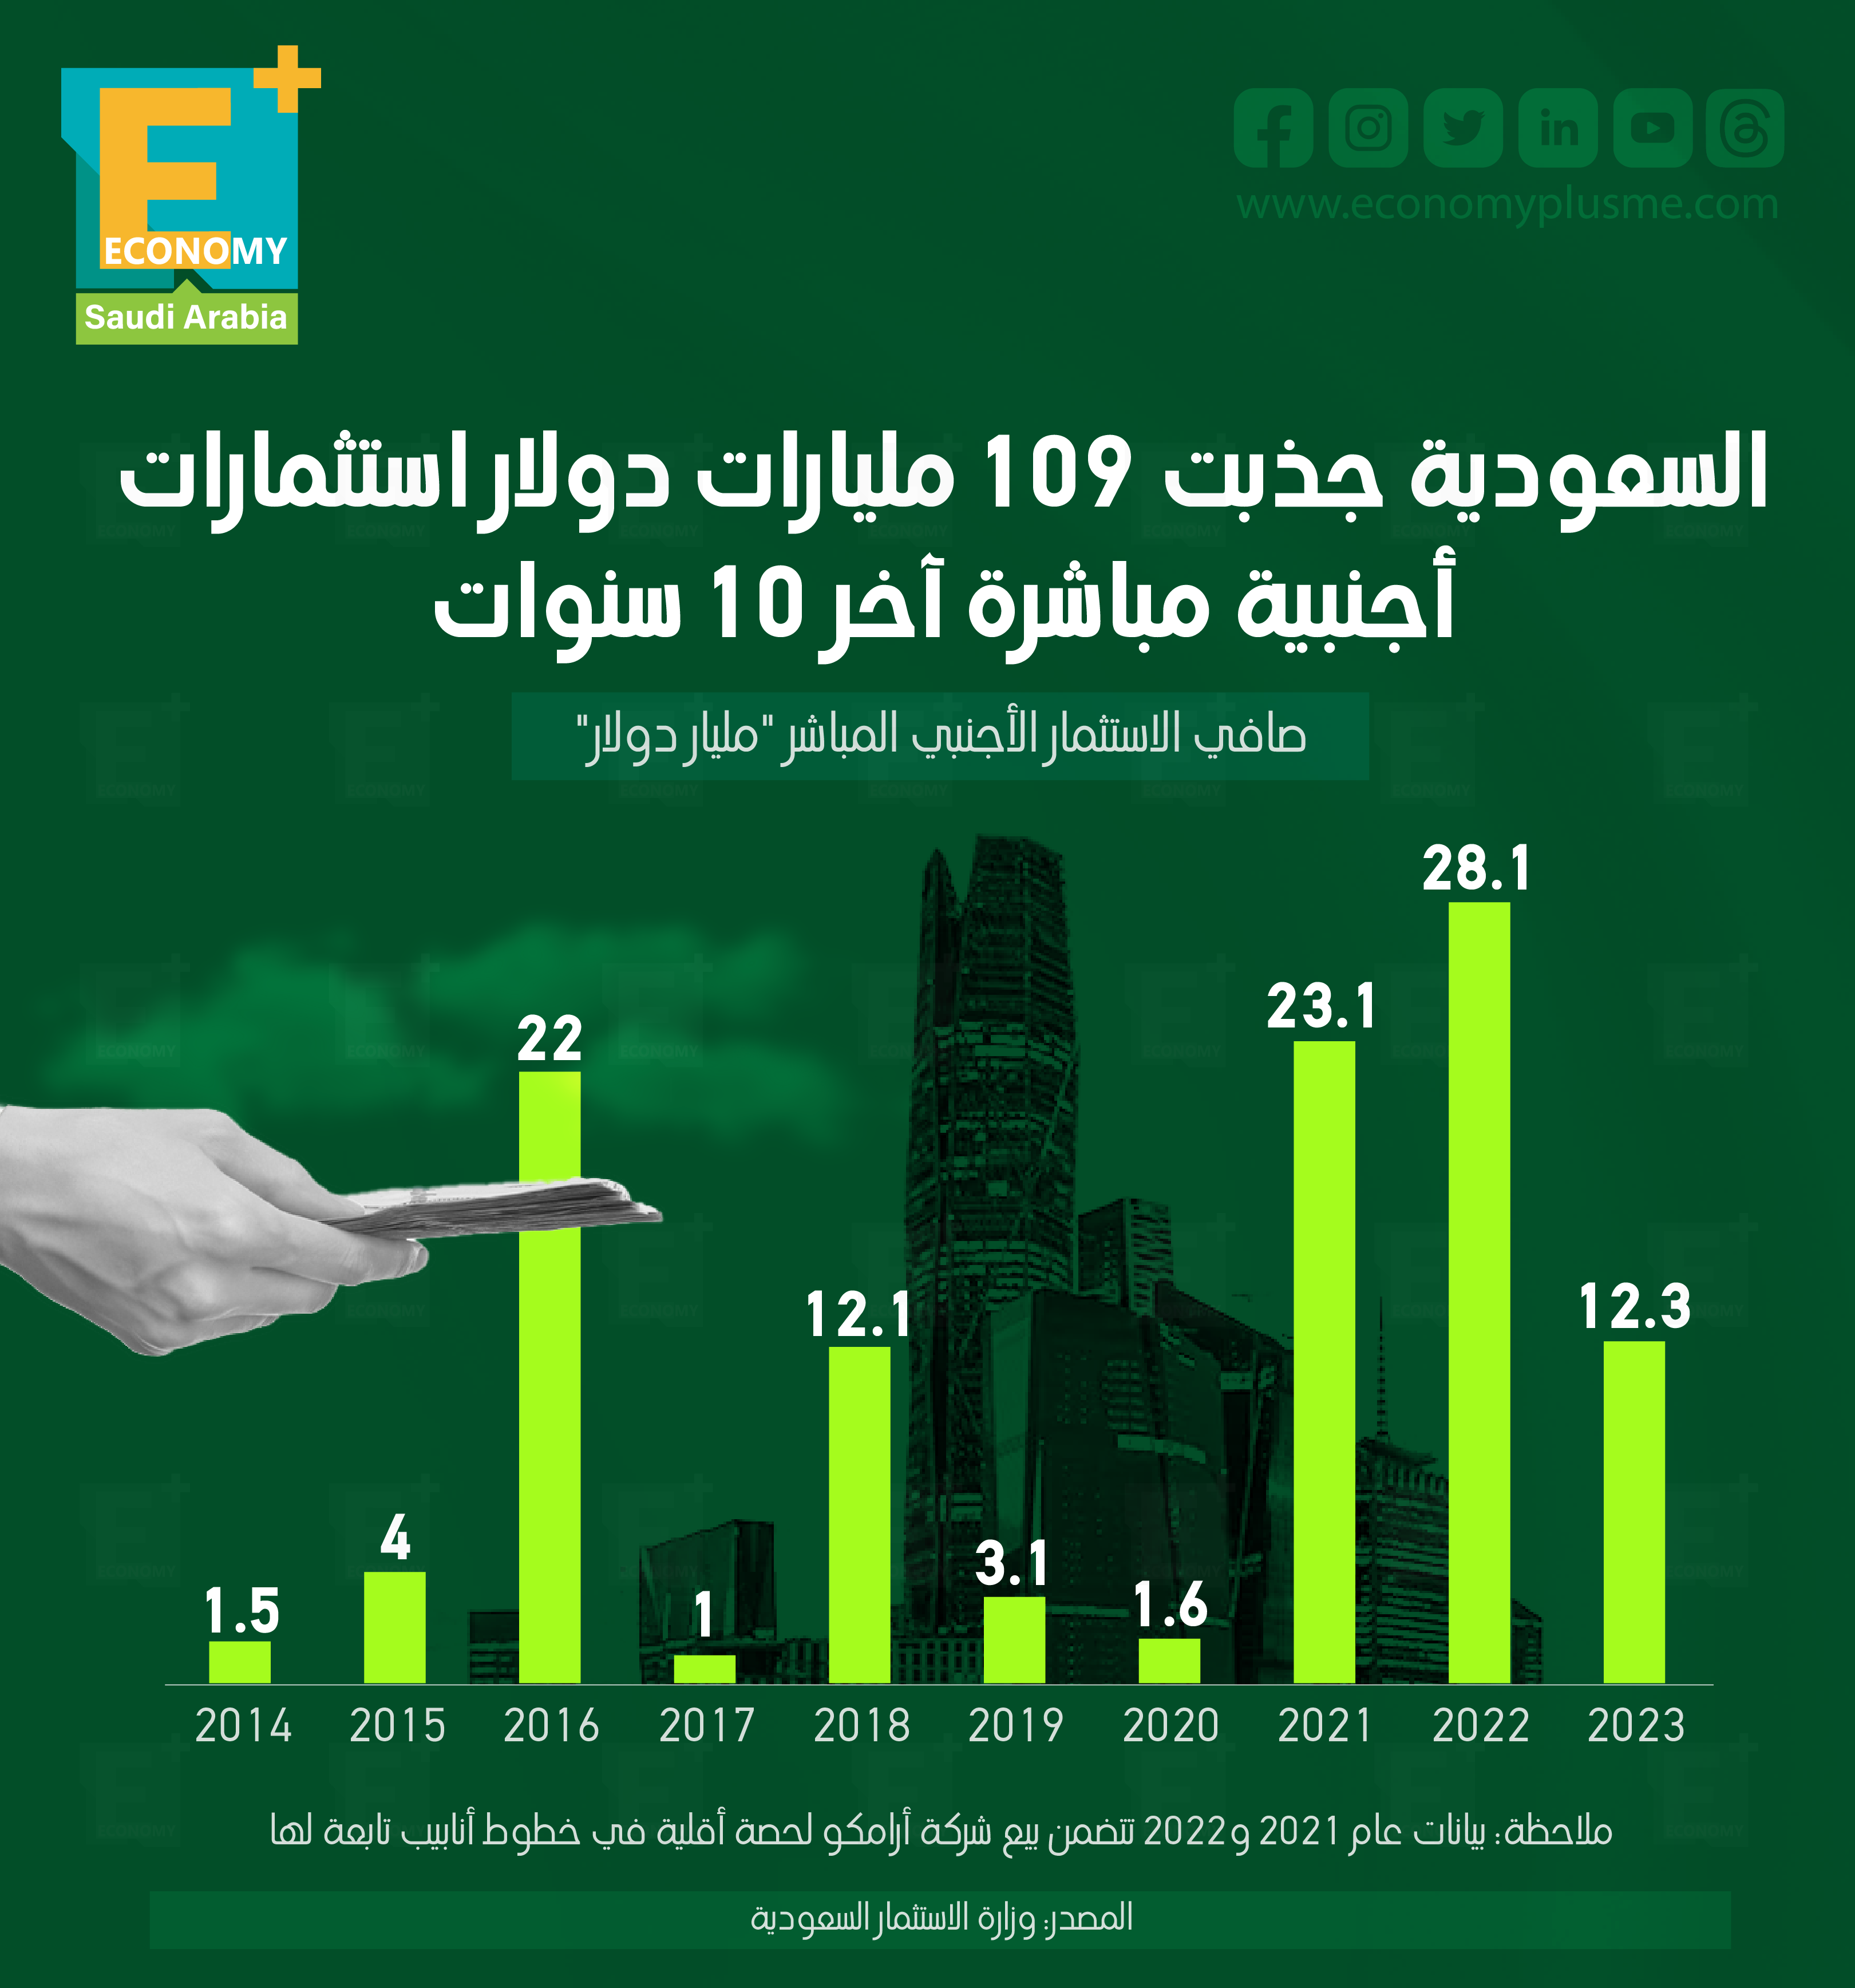 السعودية جذبت 109 مليارات دولار استثمارات أجنبية مباشرة آخر 10 سنوات